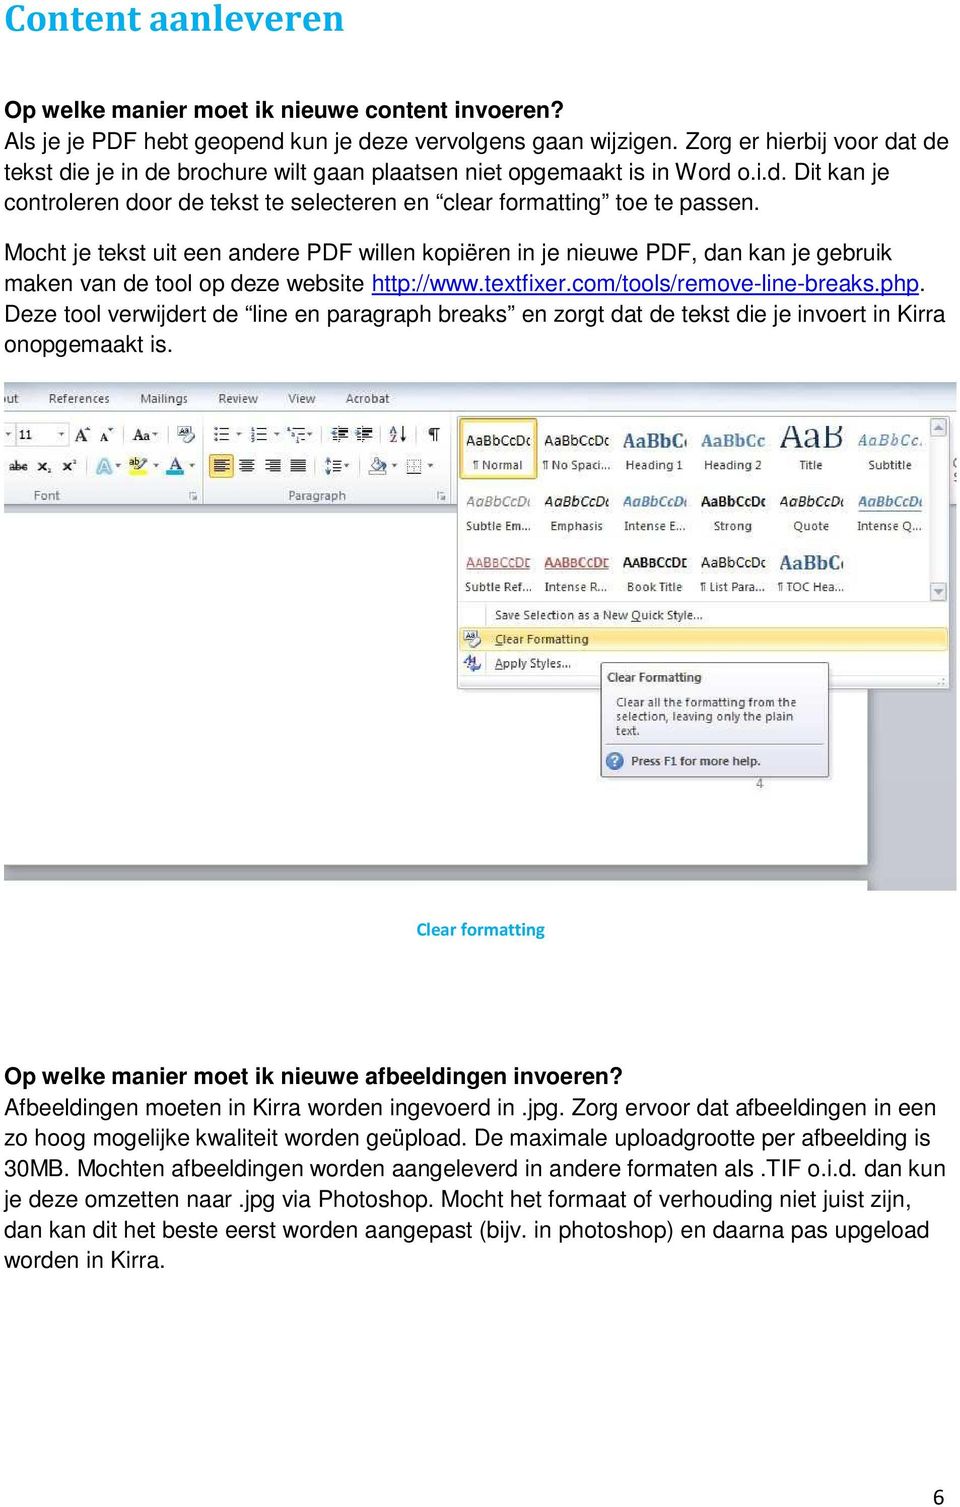 Mocht je tekst uit een andere PDF willen kopiëren in je nieuwe PDF, dan kan je gebruik maken van de tool op deze website http://www.textfixer.com/tools/remove-line-breaks.php.